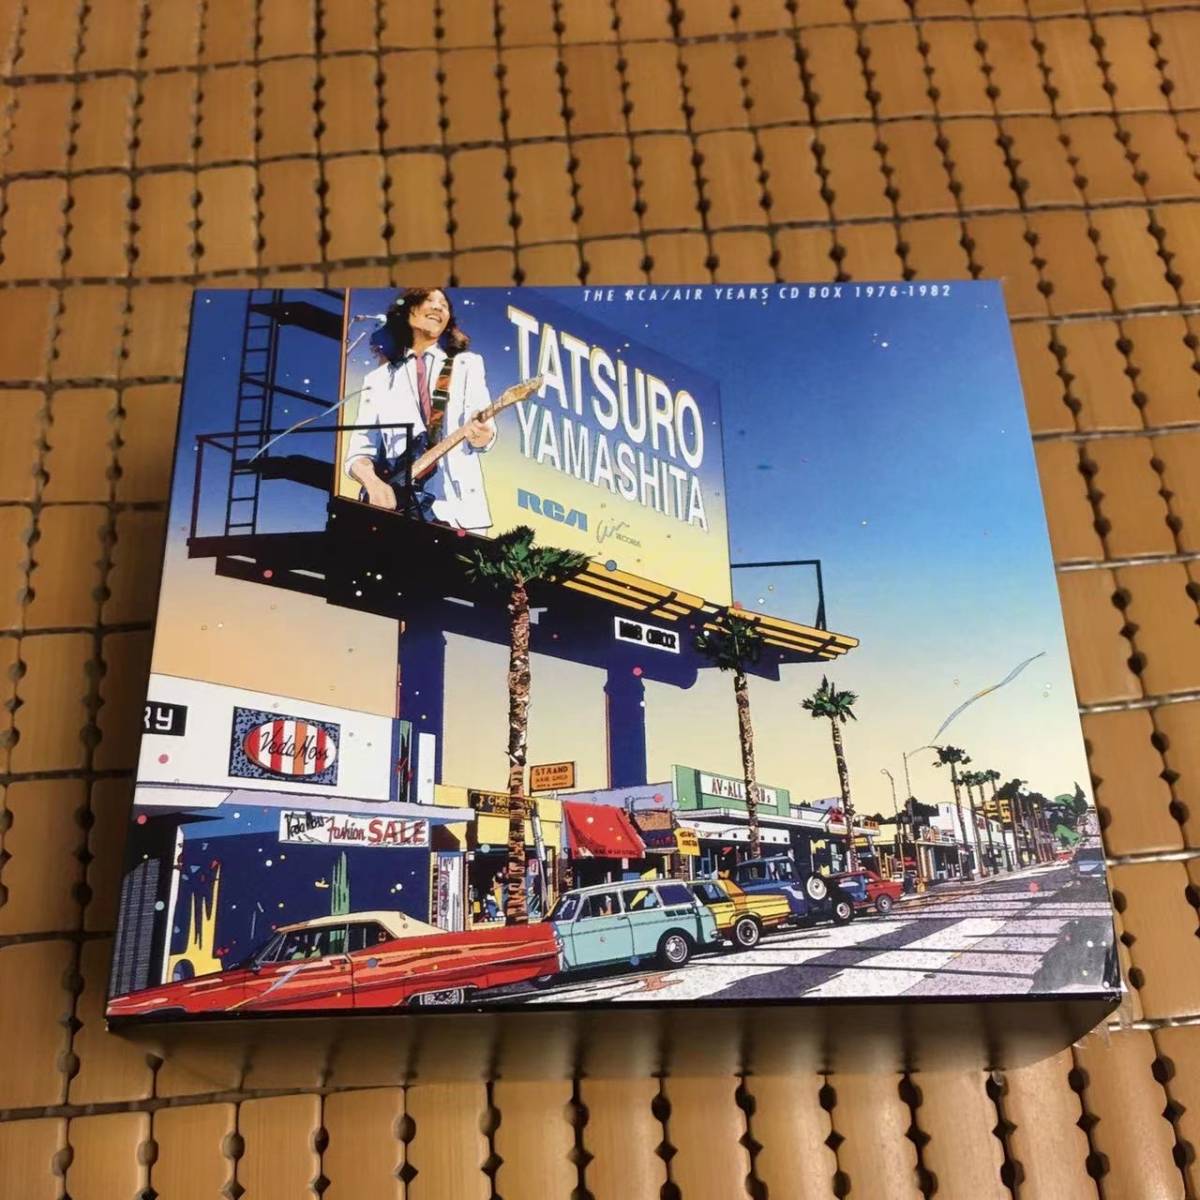 山下達郎 『THE RCA/AIR YEARS CD BOX 1976-1982』 8タイトル9枚組CD 特典盤/帯付 TATSURO YAMASHITA _画像1